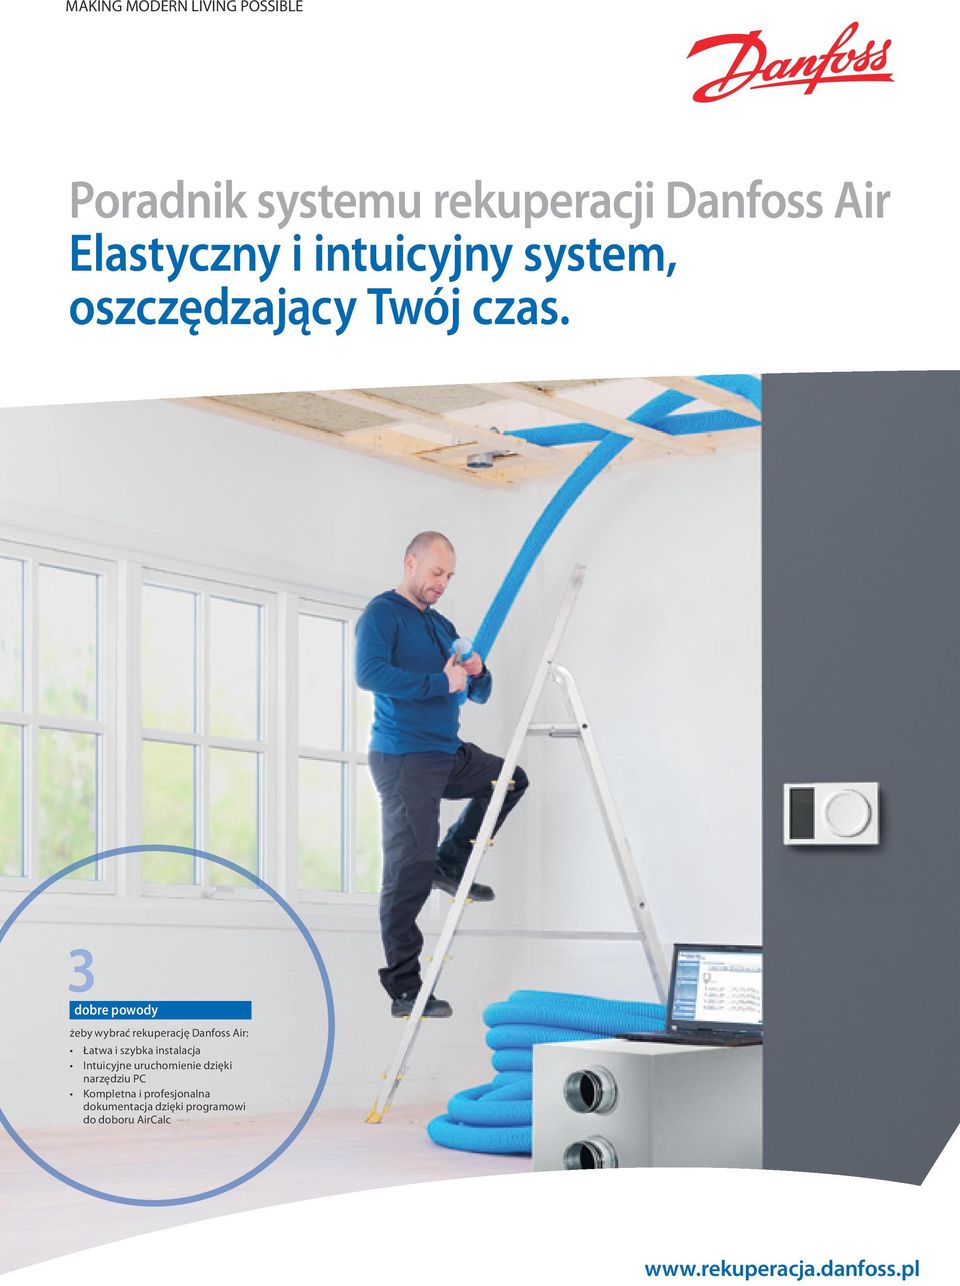 żeby wybrać rekuperację Danfoss Air: Łatwa i szybka instalacja Intuicyjne uruchomienie